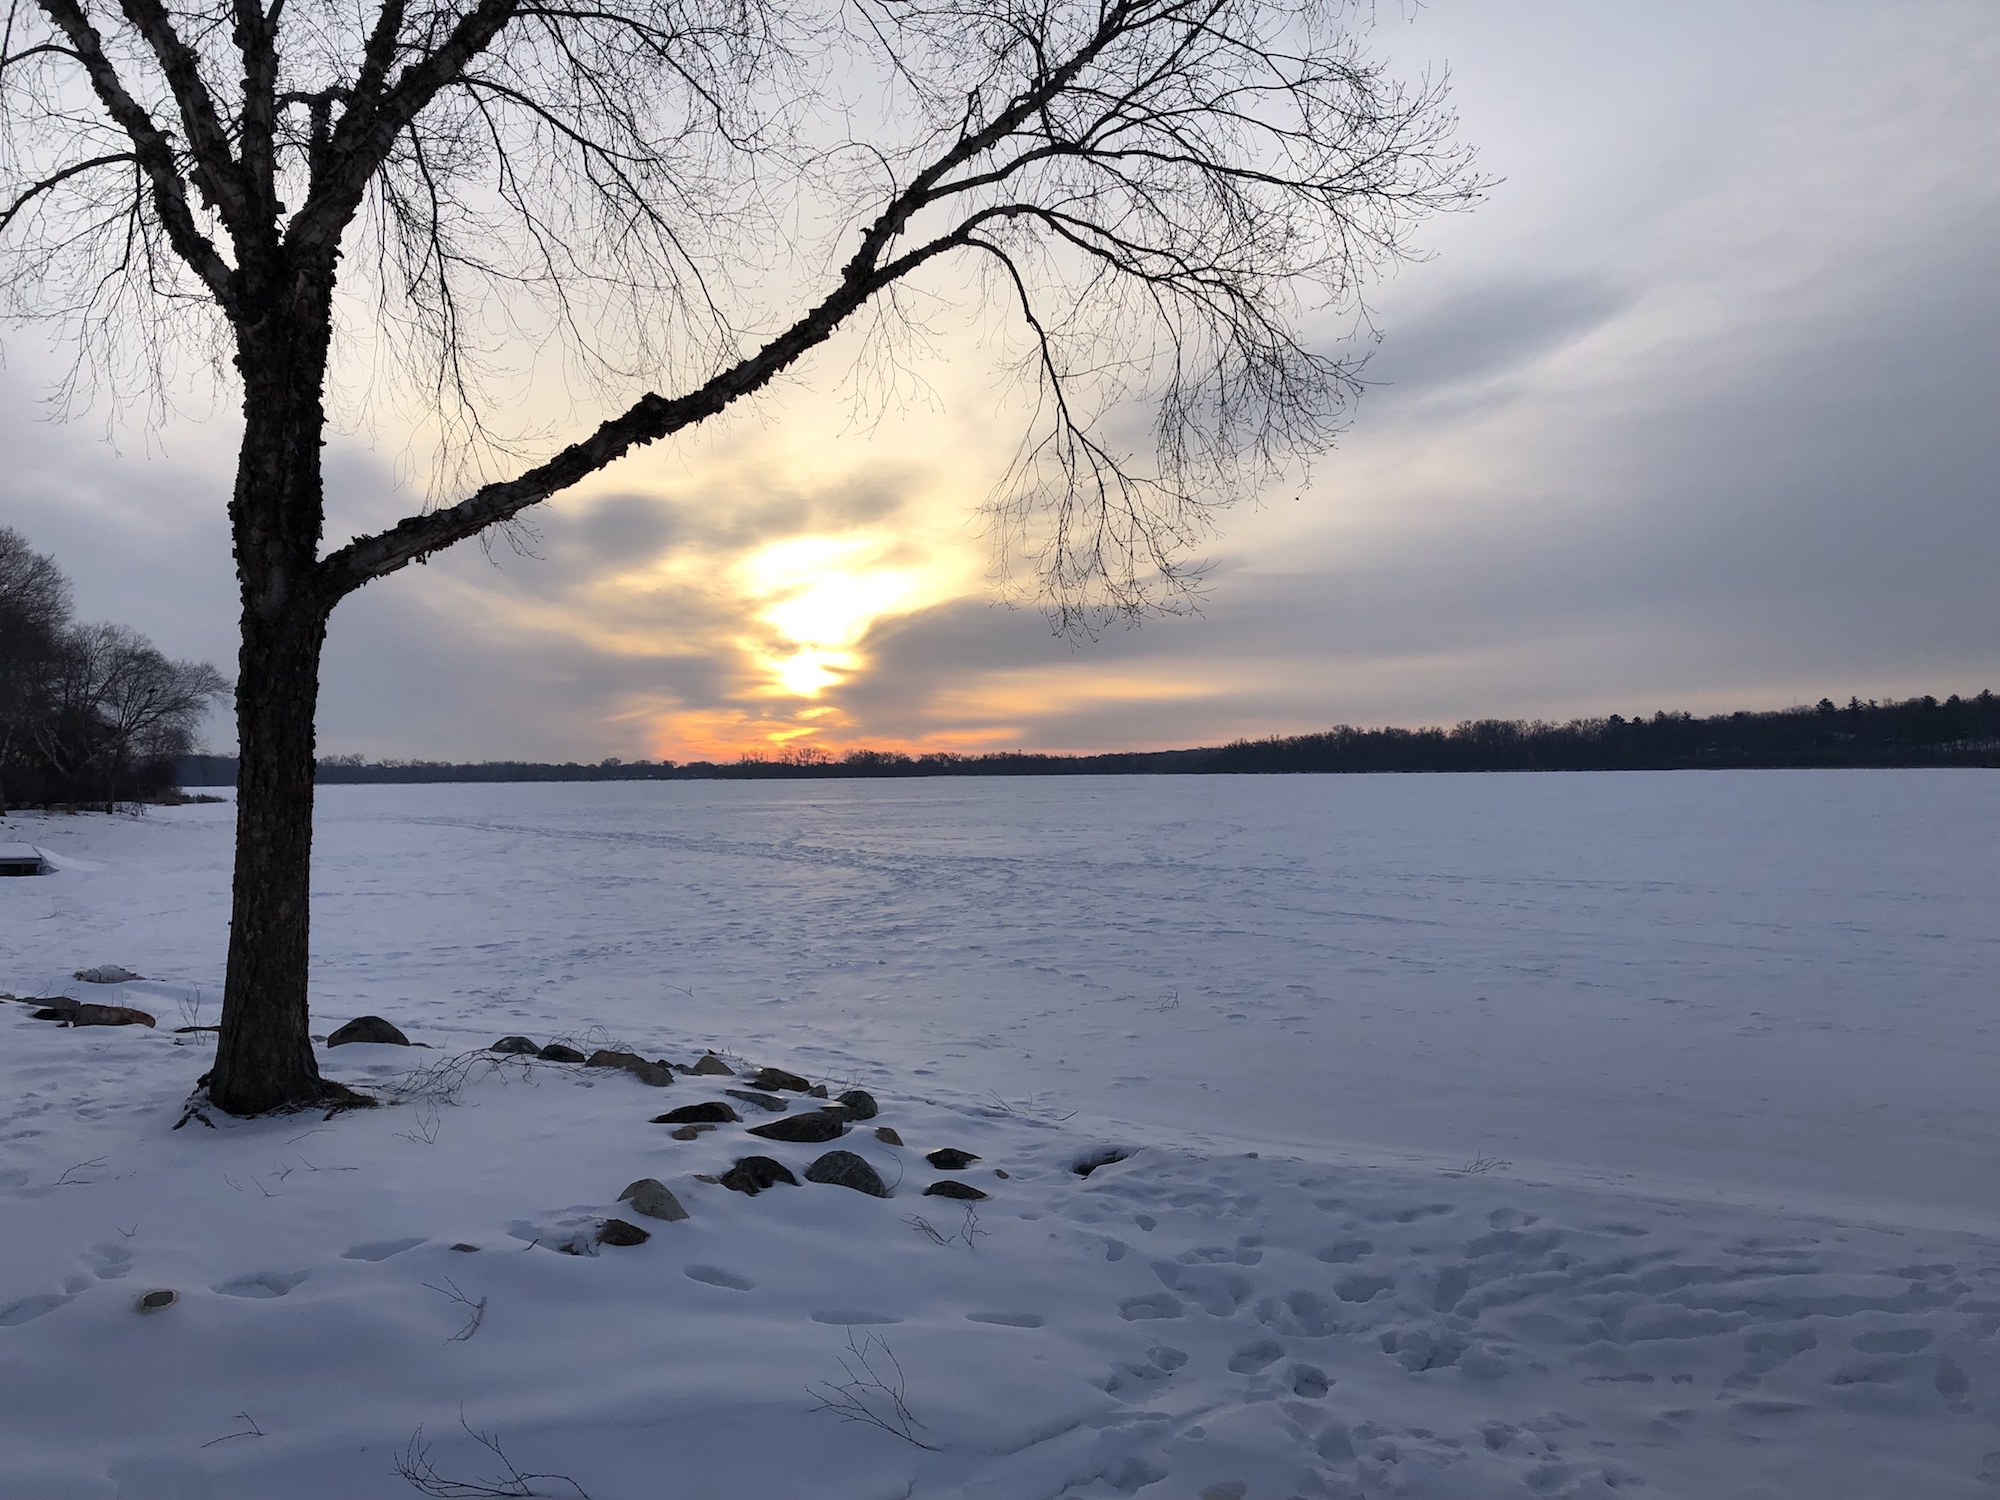 Lake Wingra on February 28, 2019.